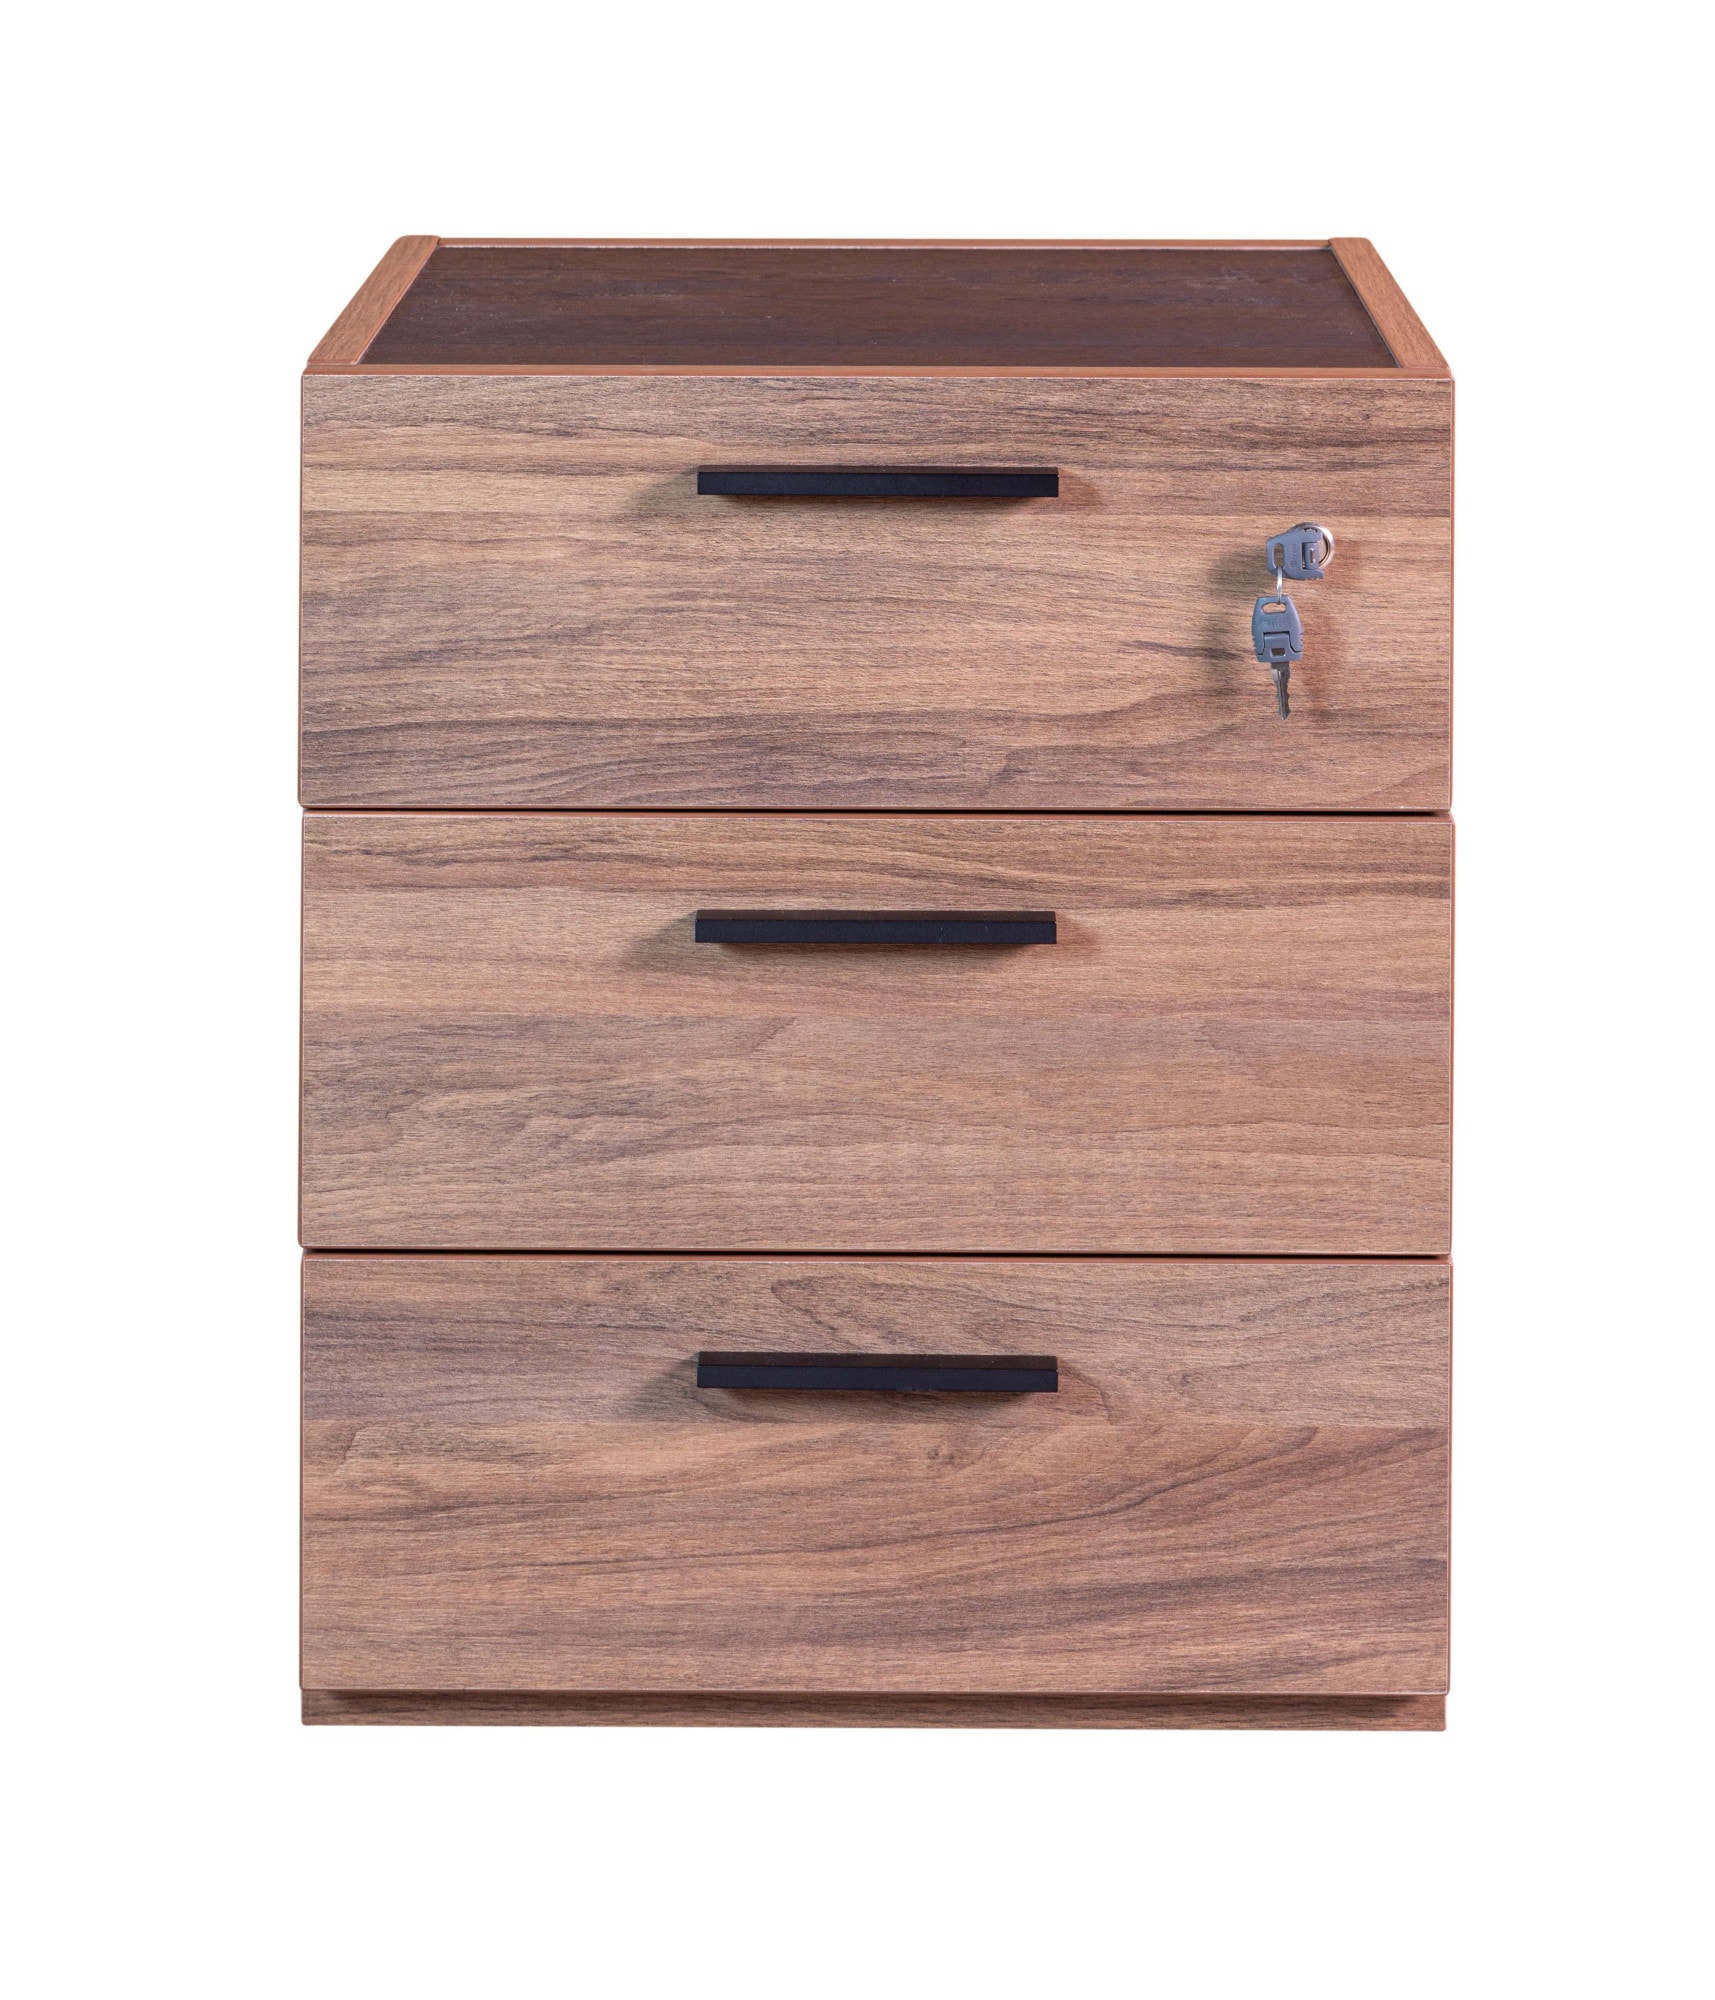 Composad Rollcontainer »DAVINCI, mit 3 Schubladen, davon 1 abschließbar,«, Maße (B/T/H): ca. 50x47,2x61,2 cm, 100% recyceltes Holz, Made in Italy